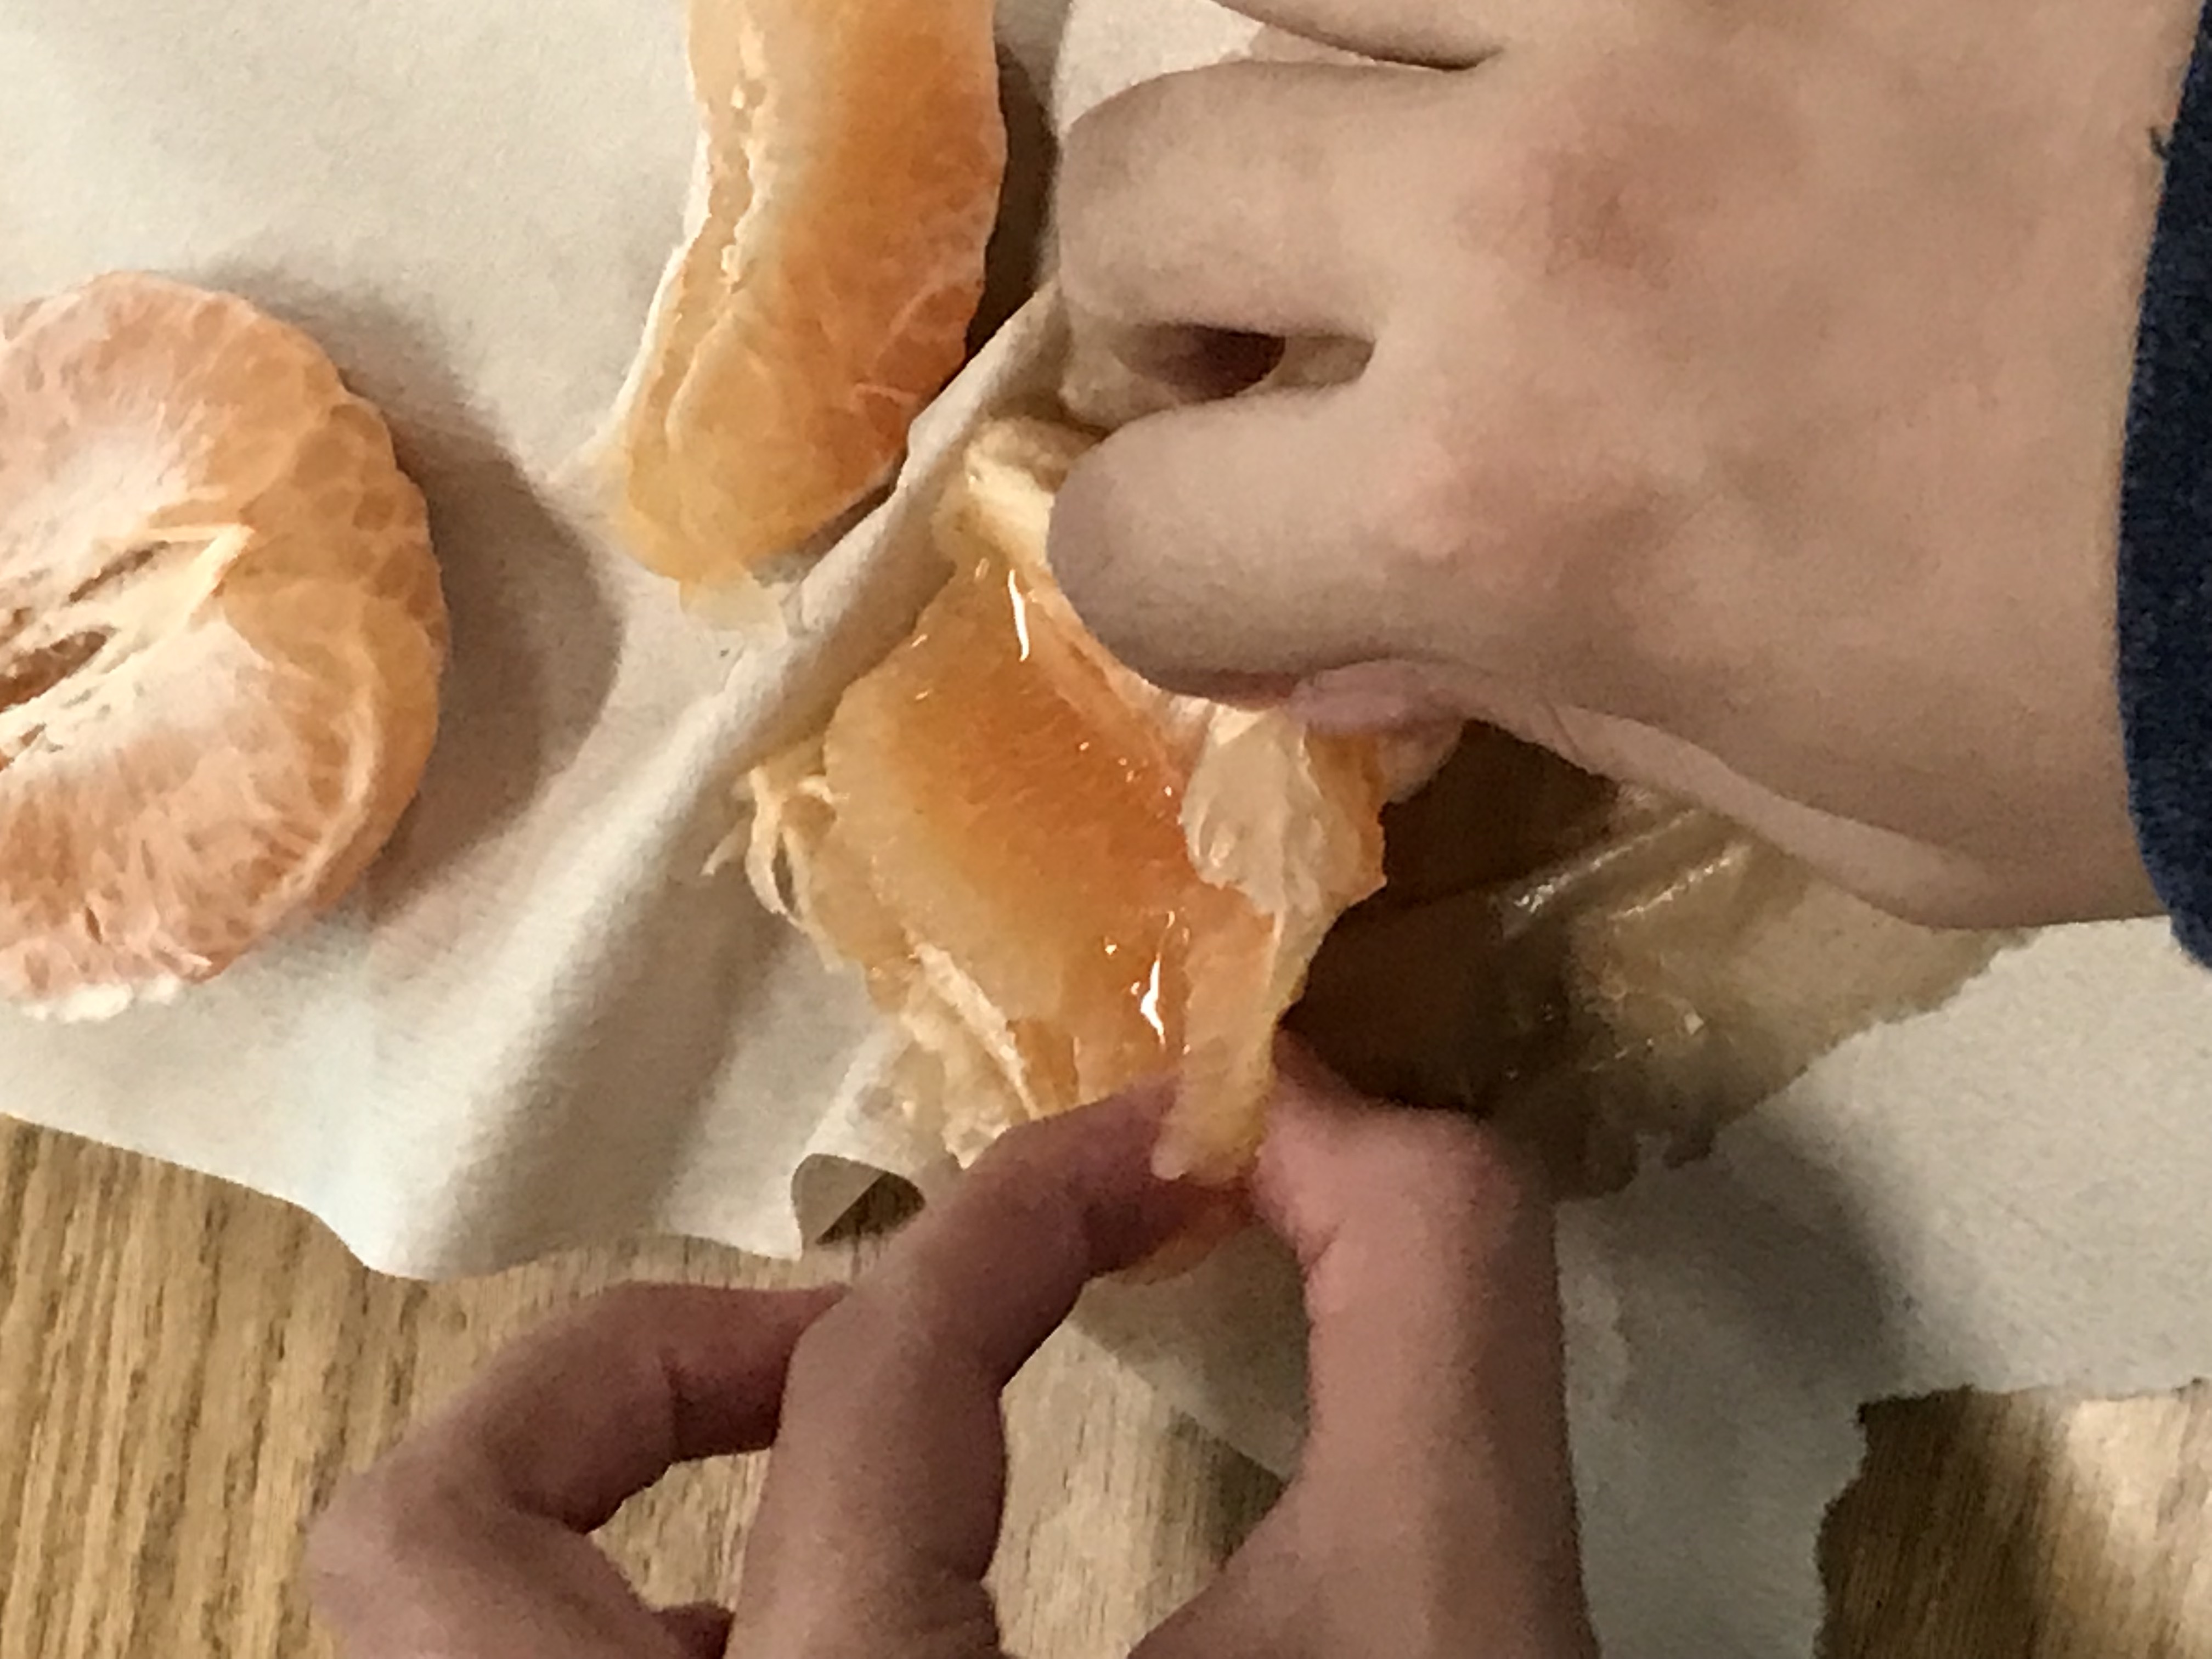 Separating orange slices